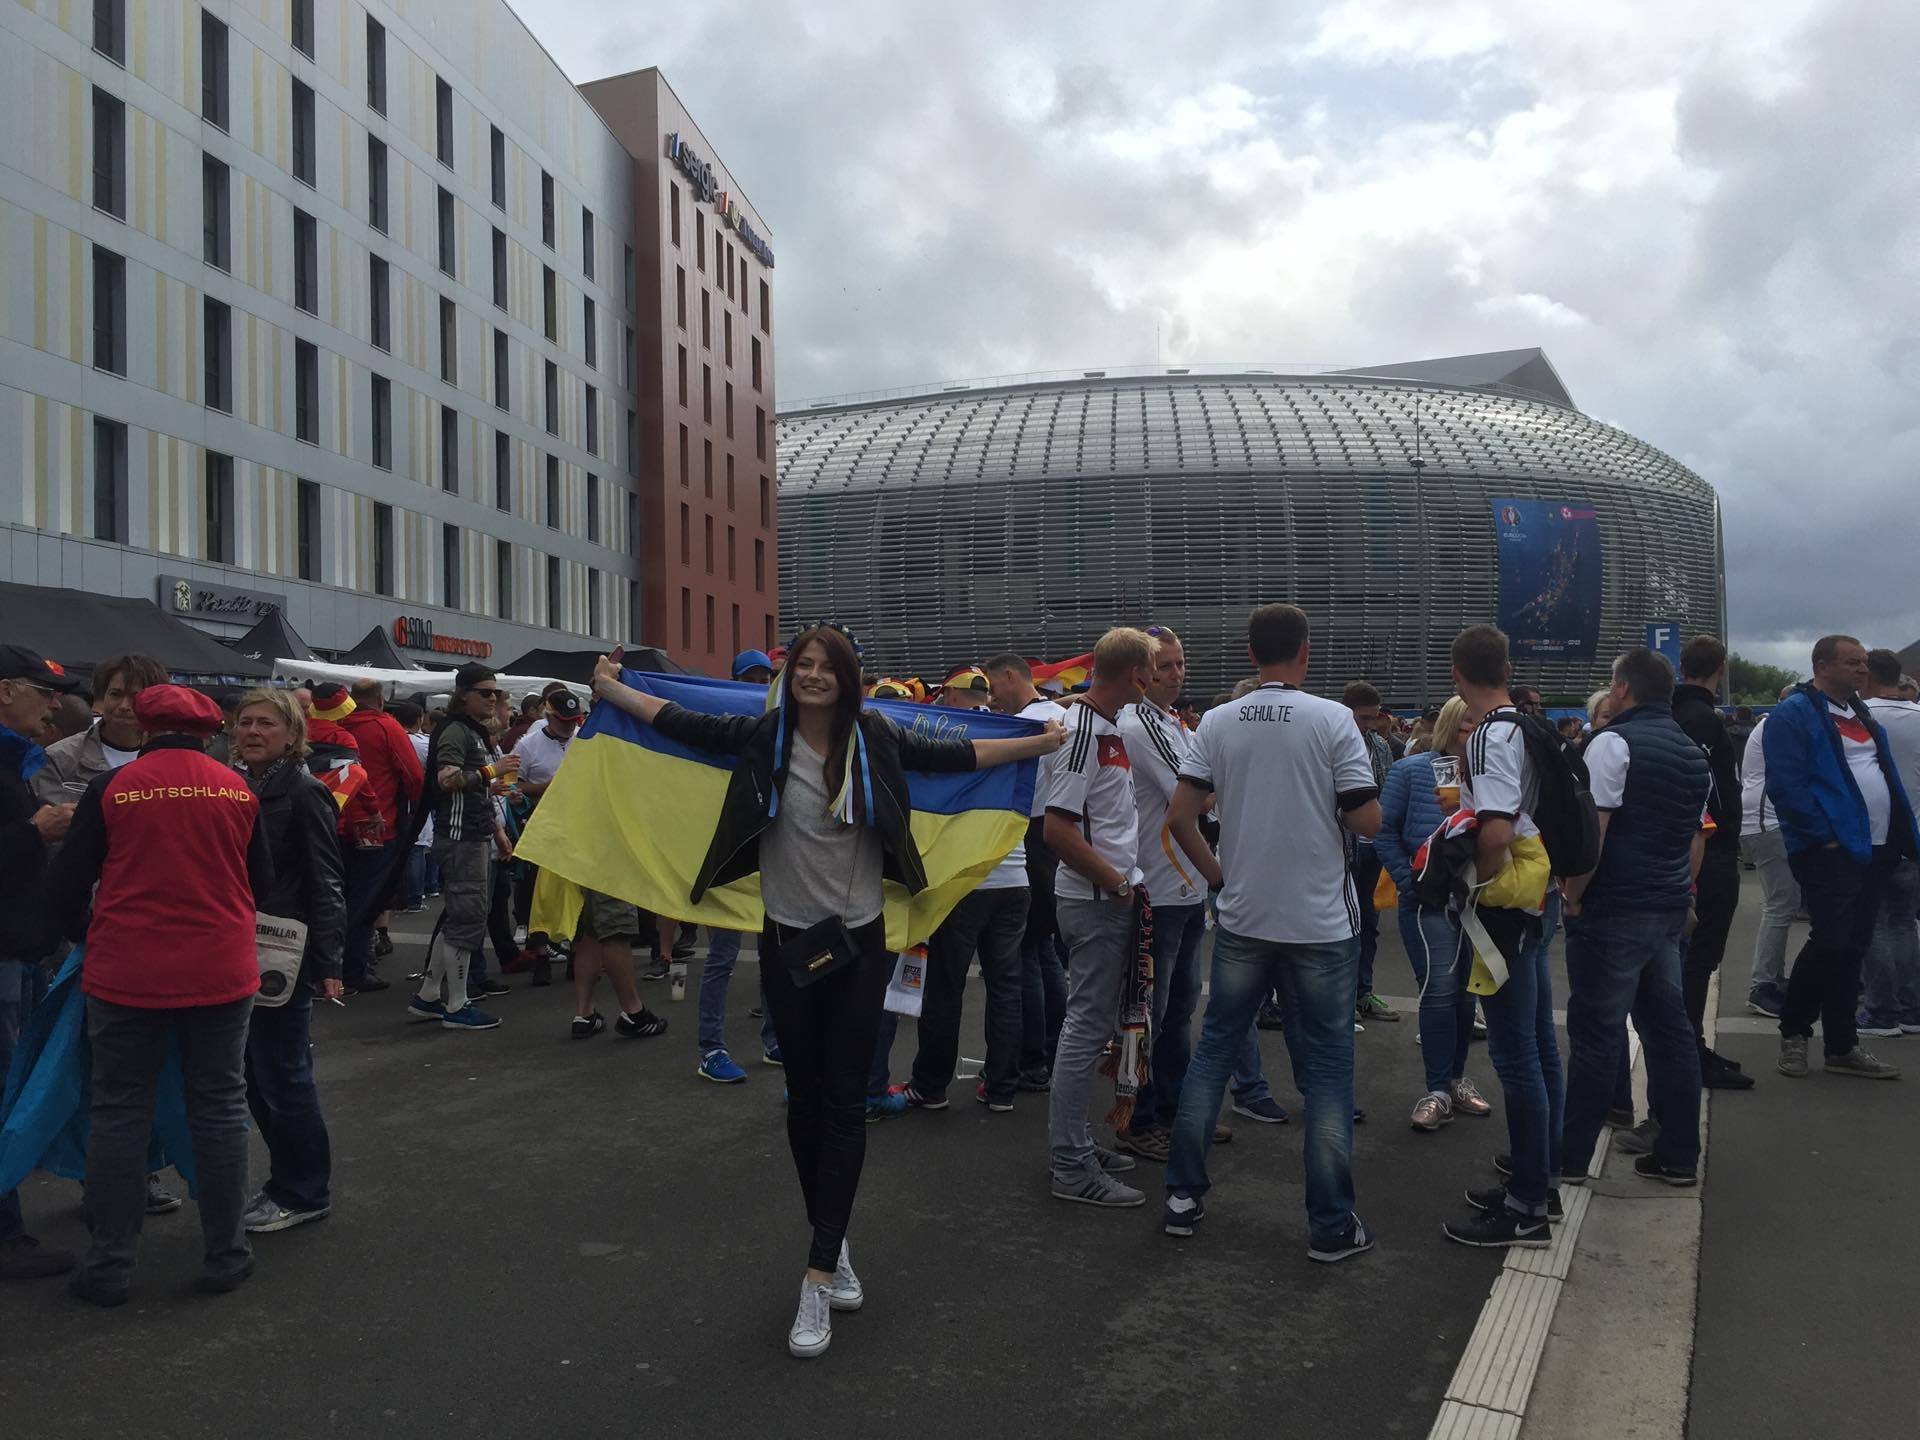 Thư EURO: Lille đã sẵn sàng trước cuộc chạm trán Đức - Ukraine